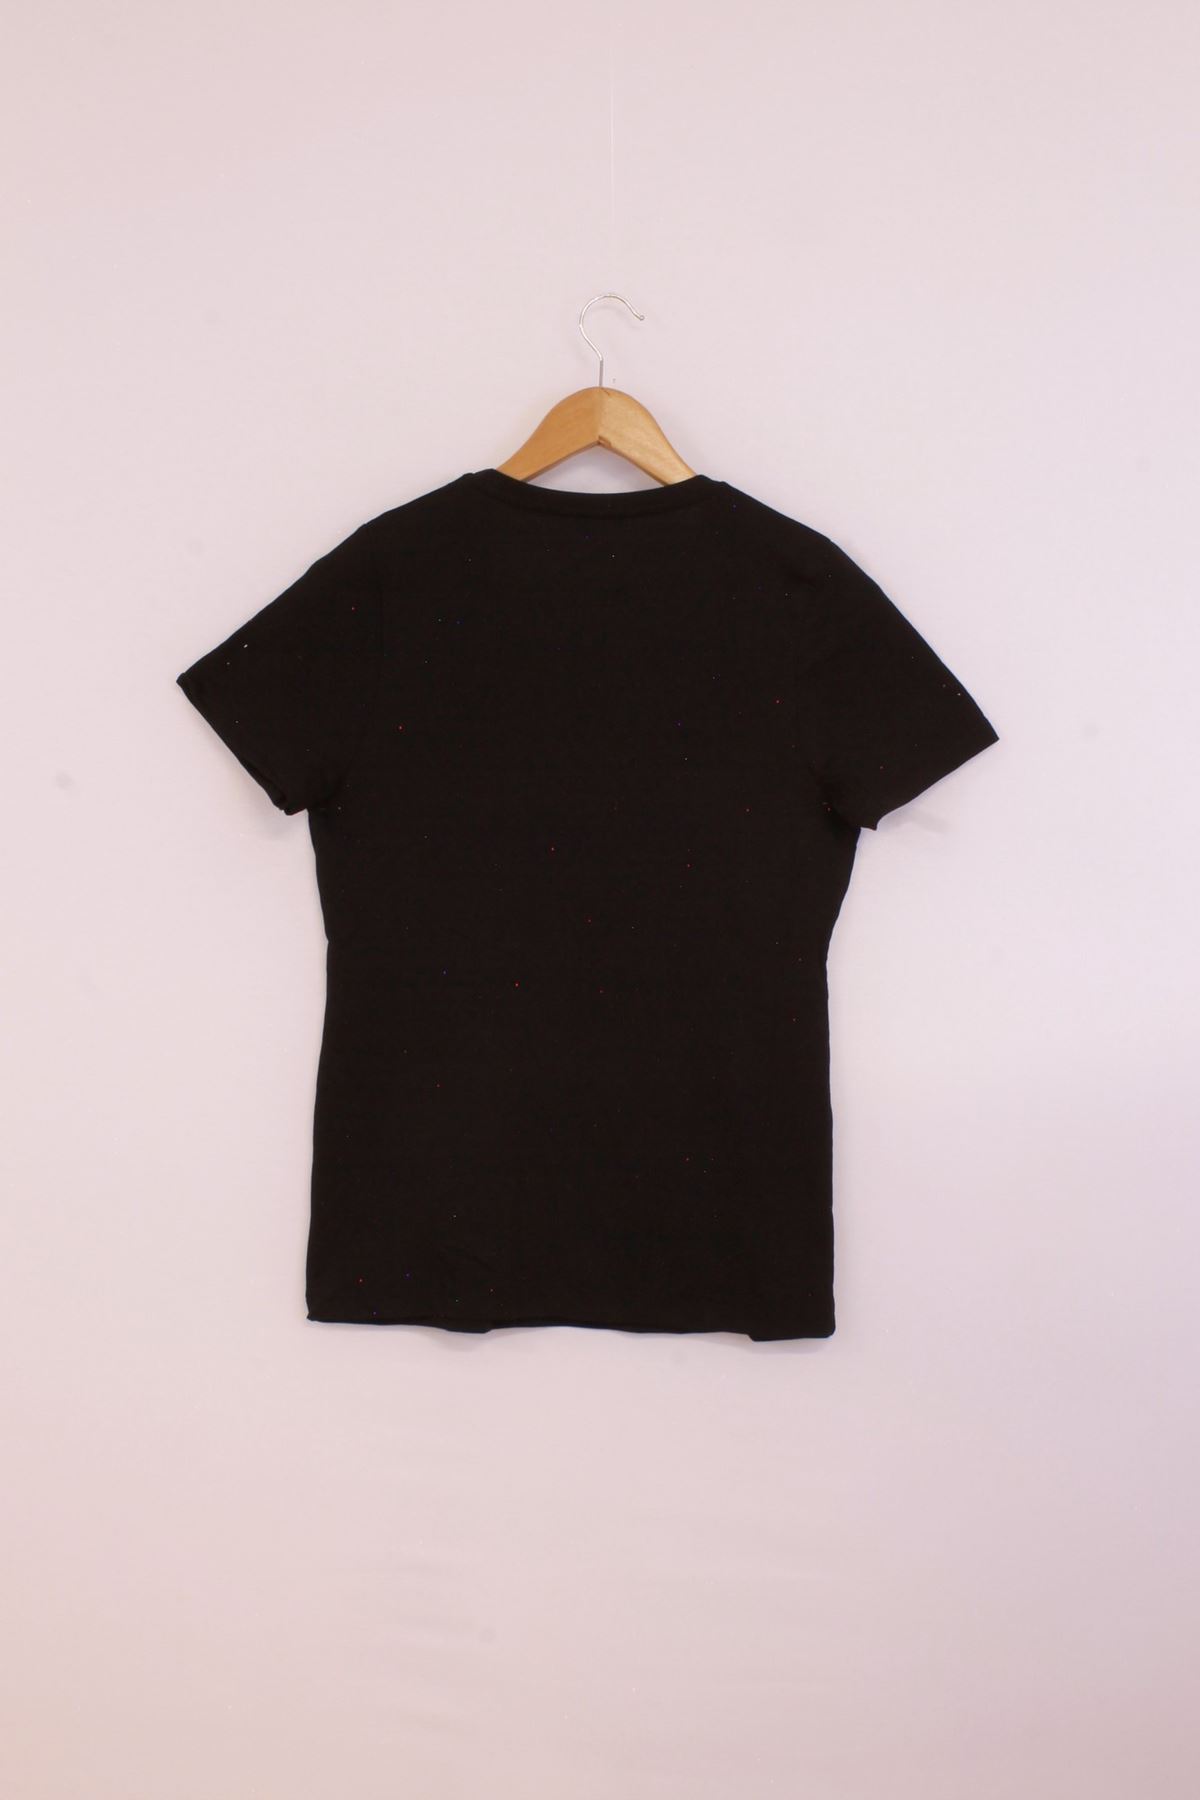 Giyinsen Kadın Siyah Tişört - 23YL71595013